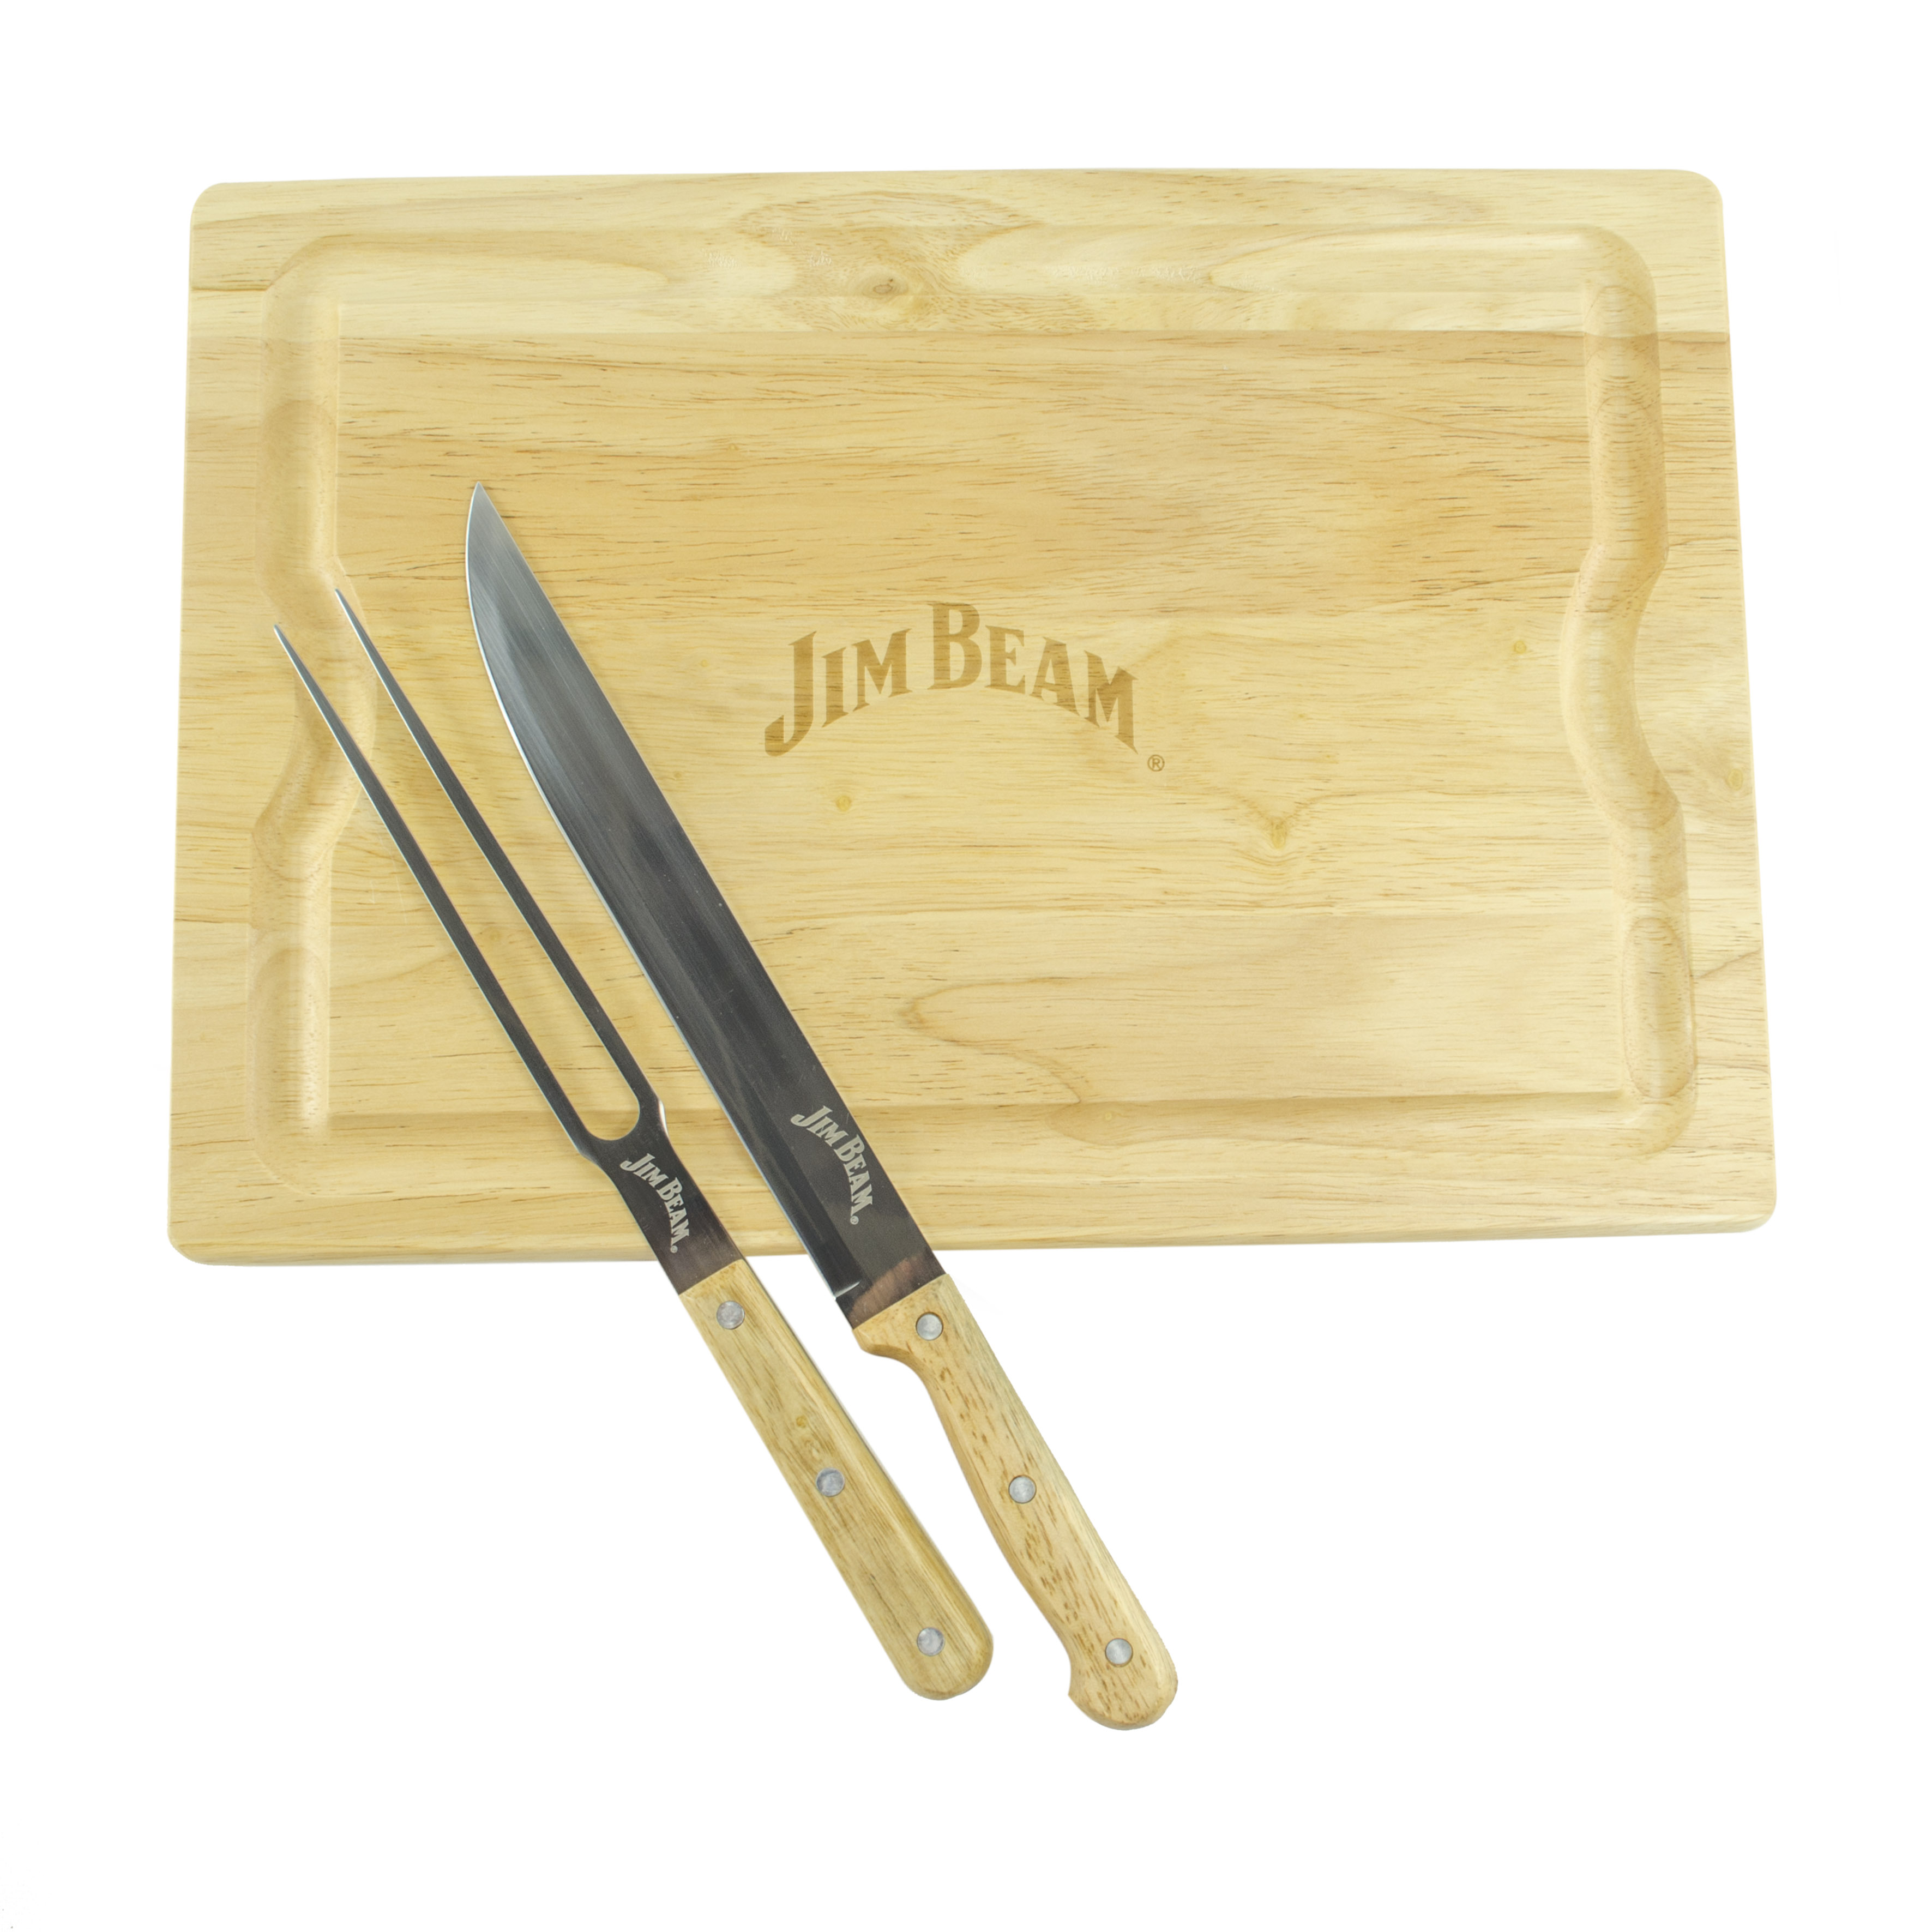 Jim Beam JB0237, Schneidebrett, 1 Tranchiermesser mit Saftrille, 1 Gabel, aus Edelstahl und Bambus-Holzgriff, scharfkantige Edelstahlklinge, leichte Reinigung, schonend, Schnittfestigkeit